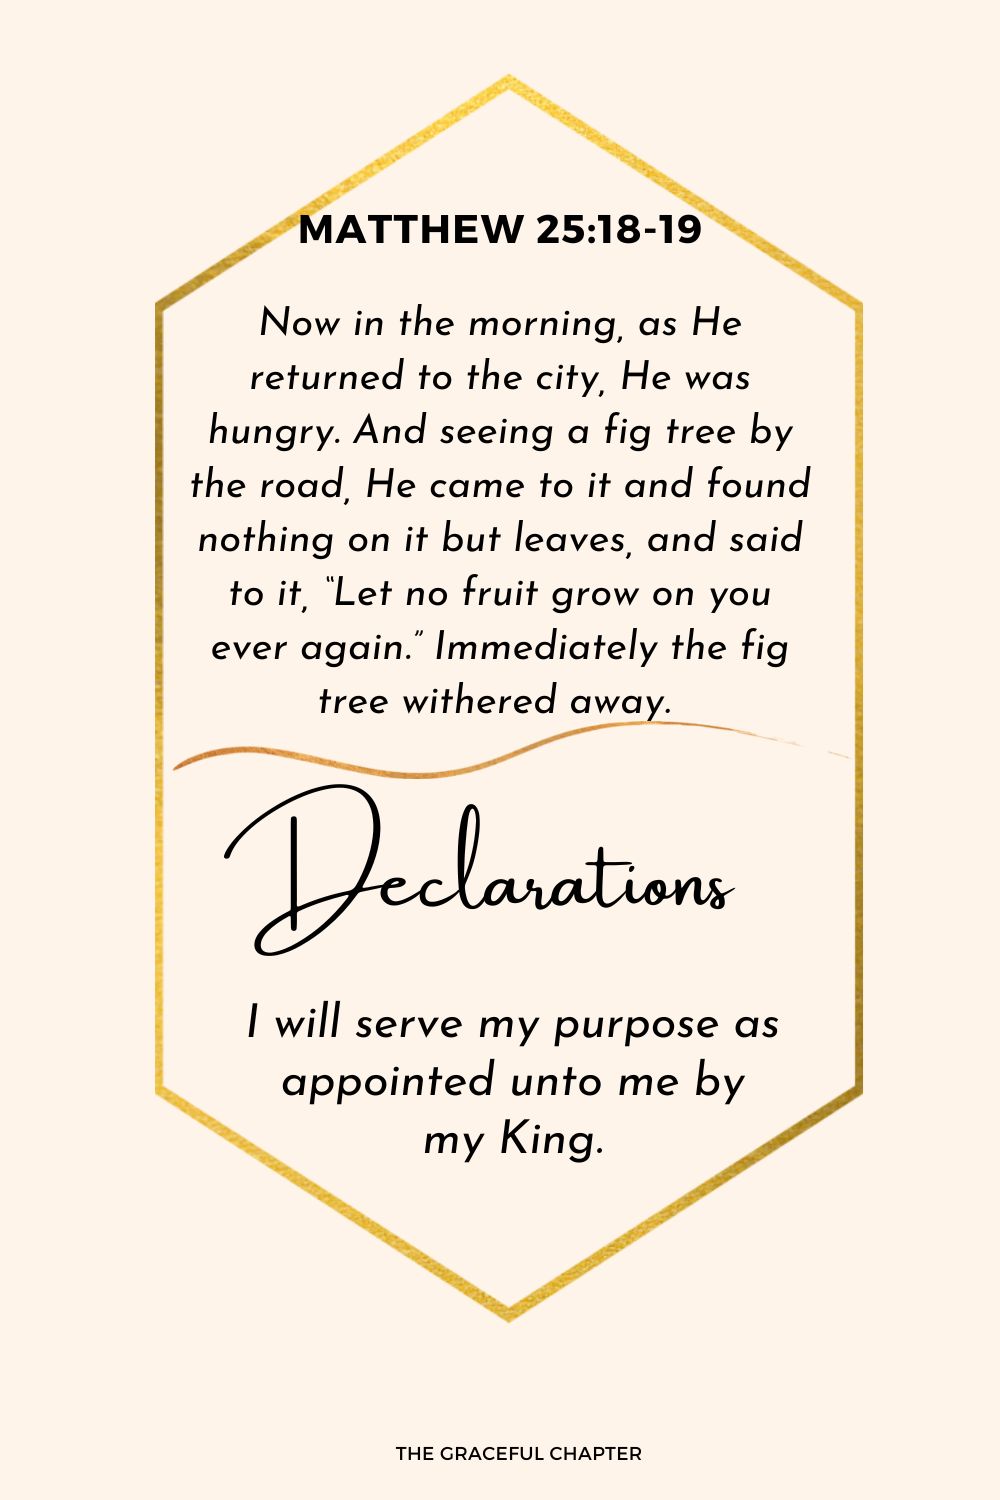 Declaration - Matthew 25:18-19